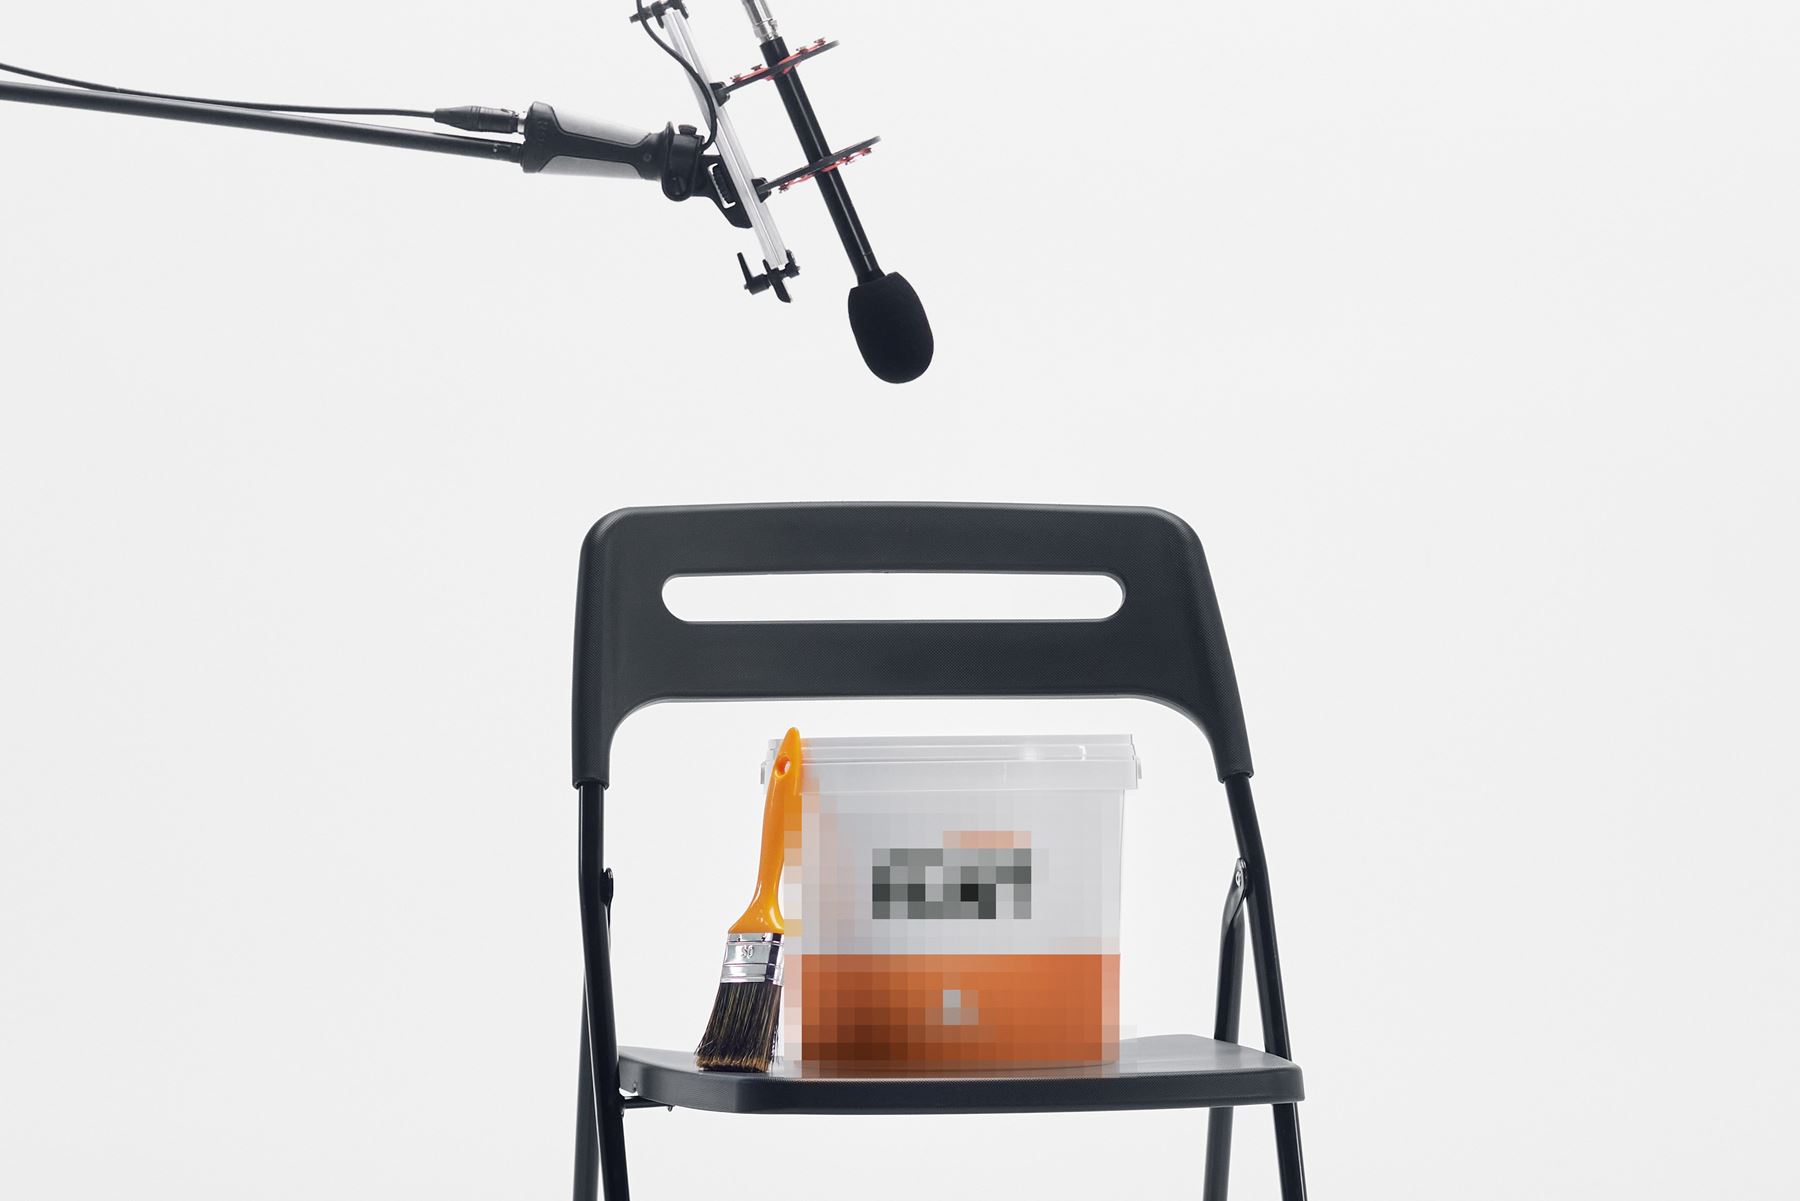 Suddig anonym målarfärgburk på en stol med en mikron ovanför riktad mot sig som att den blir intervjuad.